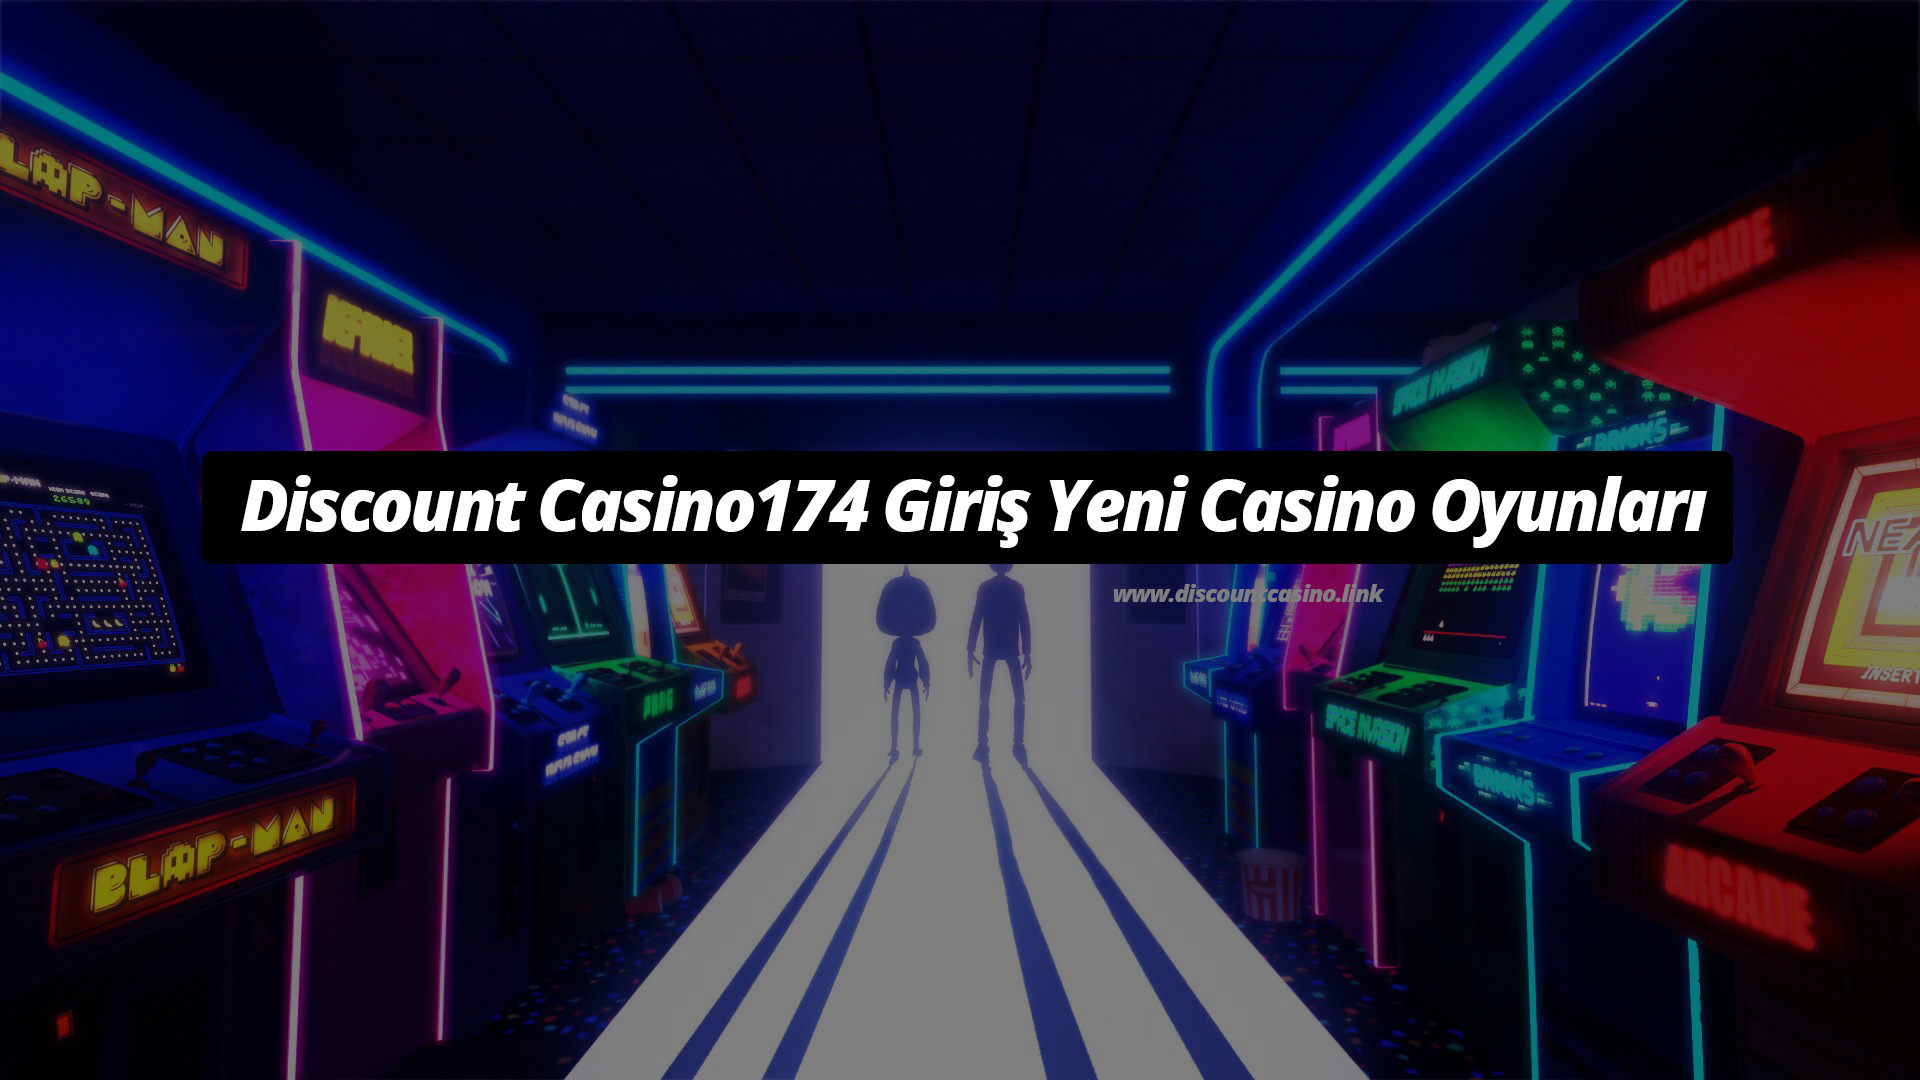 DiscountCasino174 Giriş Yeni Casino Oyunları